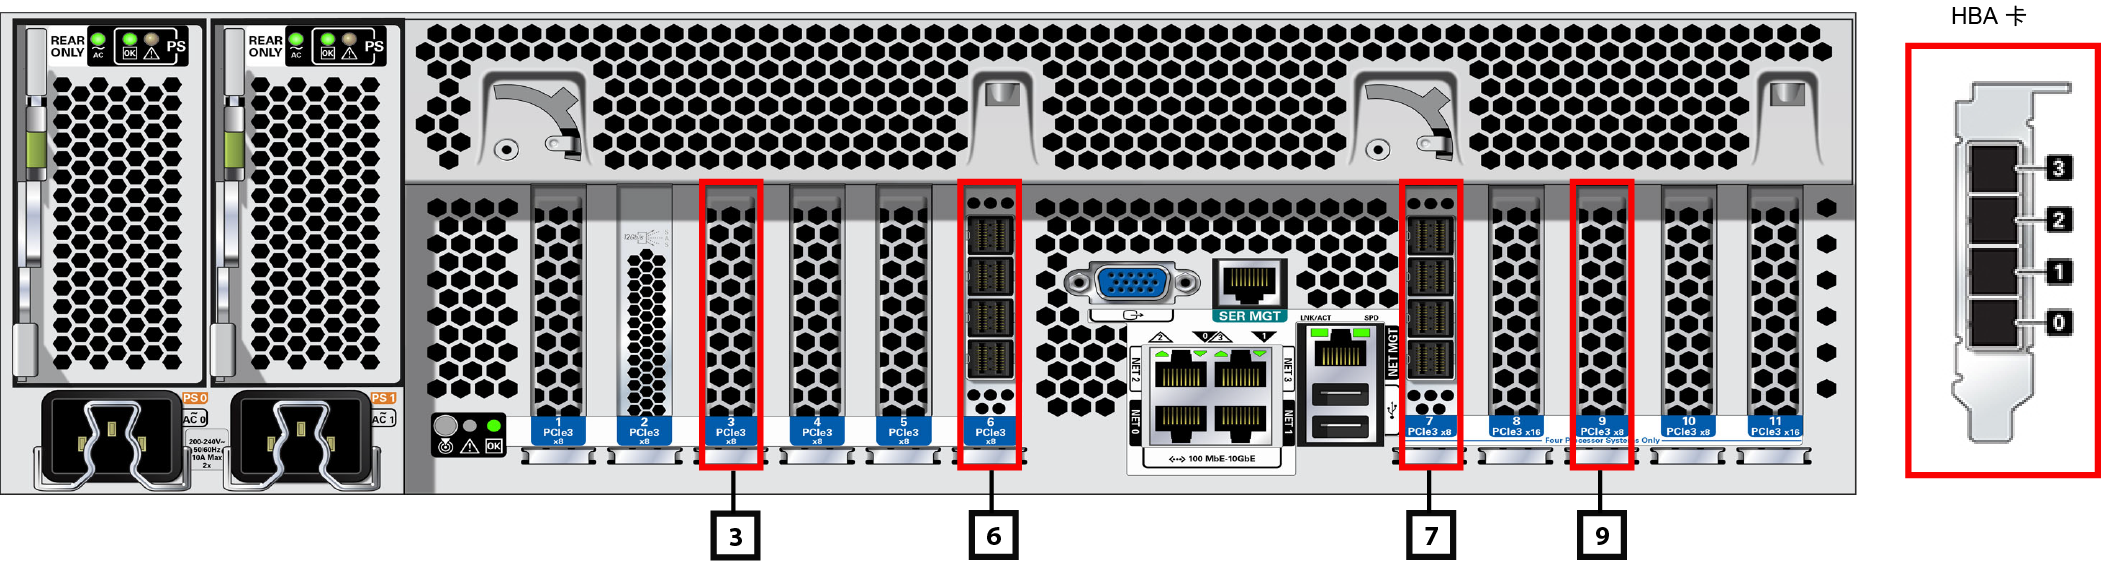 image:此图显示了 ZS5-4 后面板与 HBA 端口号。